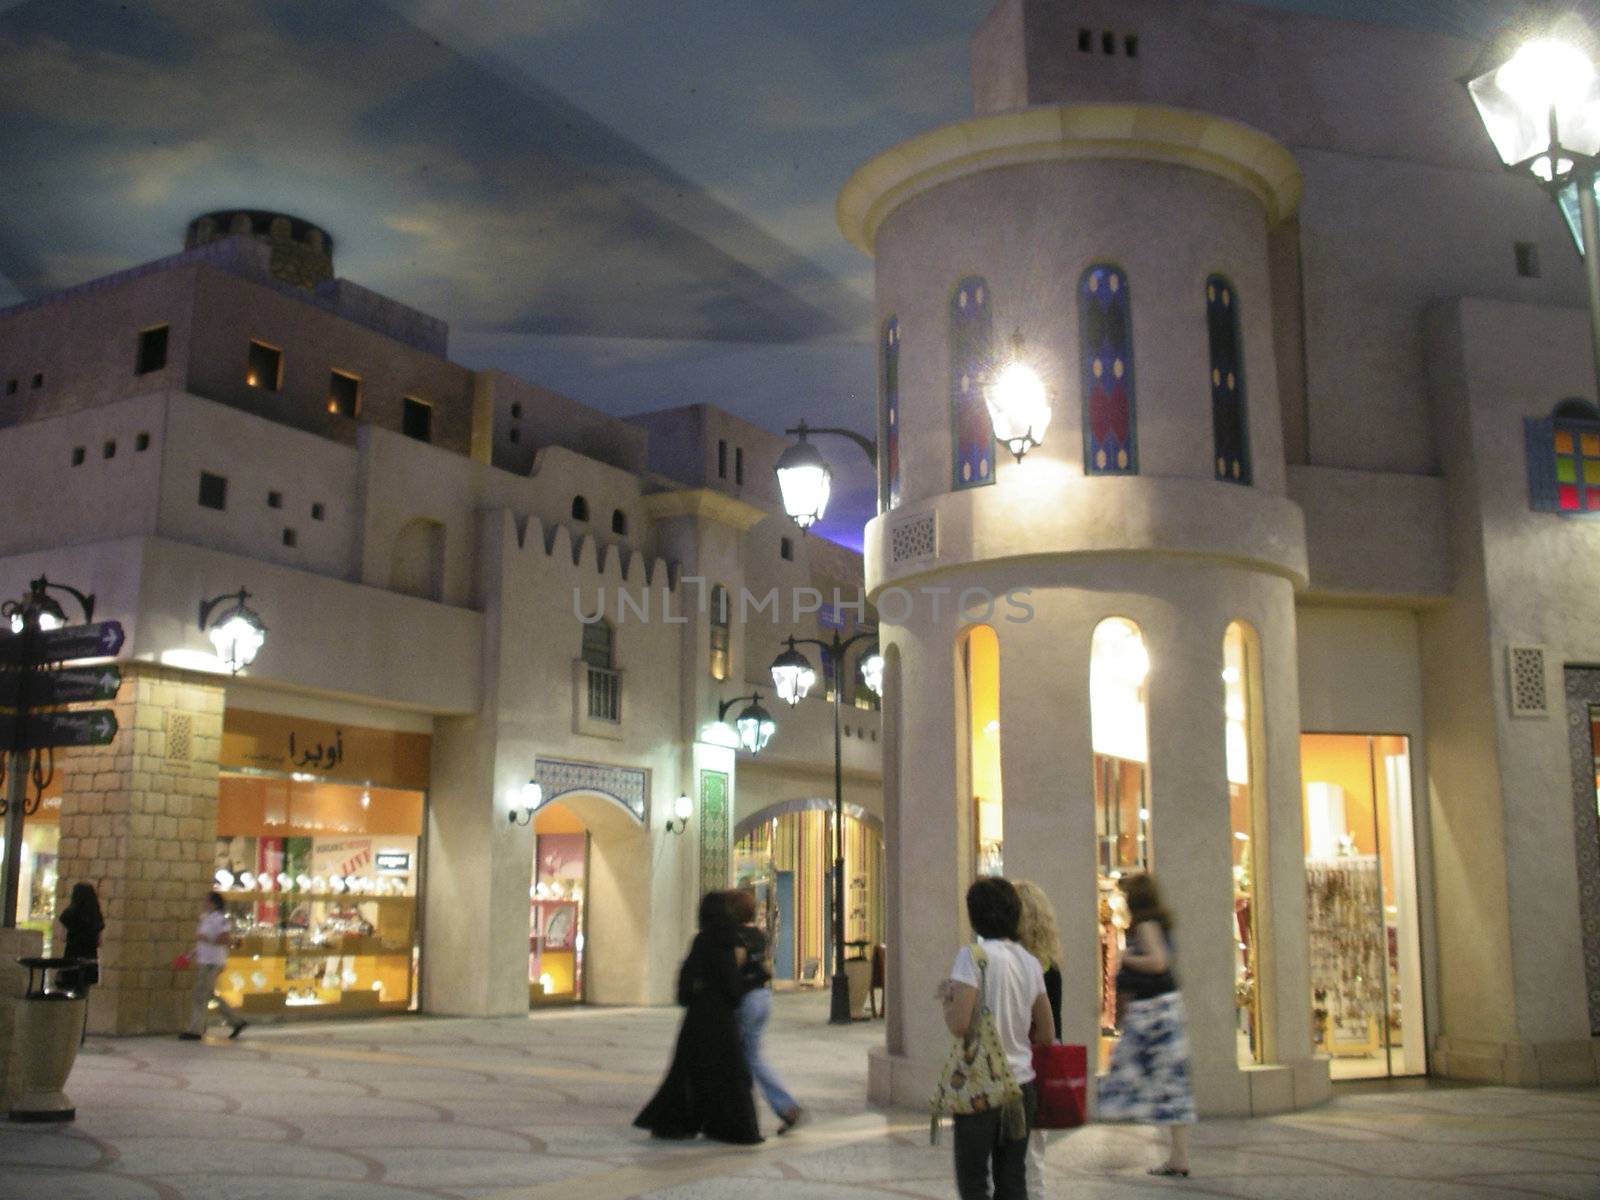 Ibn Battuta Shopping Mall, Dubai